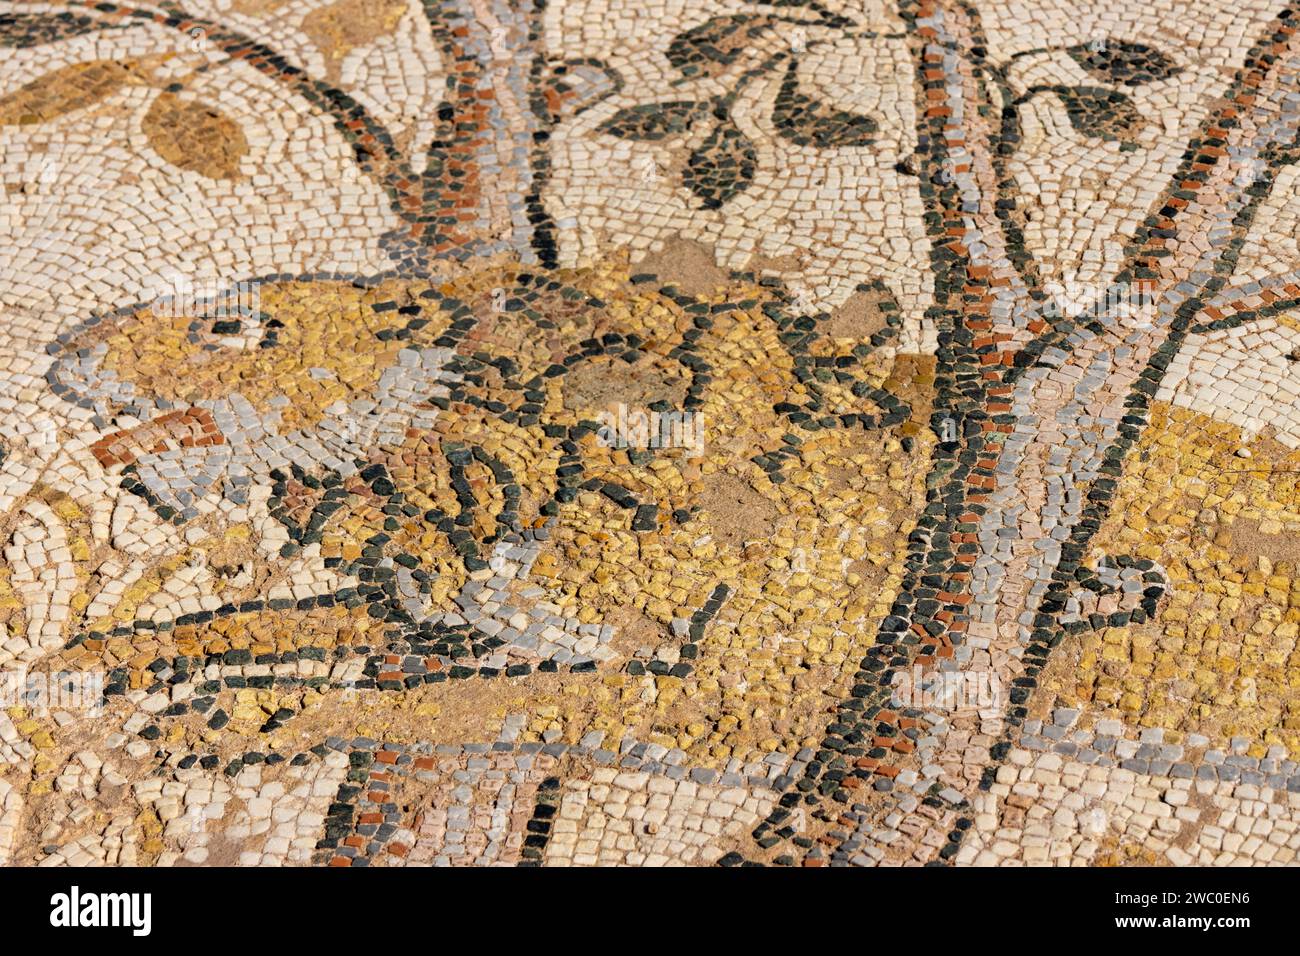 Uno splendido mosaico di leoni nell'antica città greca di Heraclea Lyncestis vicino all'odierna Bitola, in Macedonia del Nord. Preso in una giornata di sole con una buona luce Foto Stock